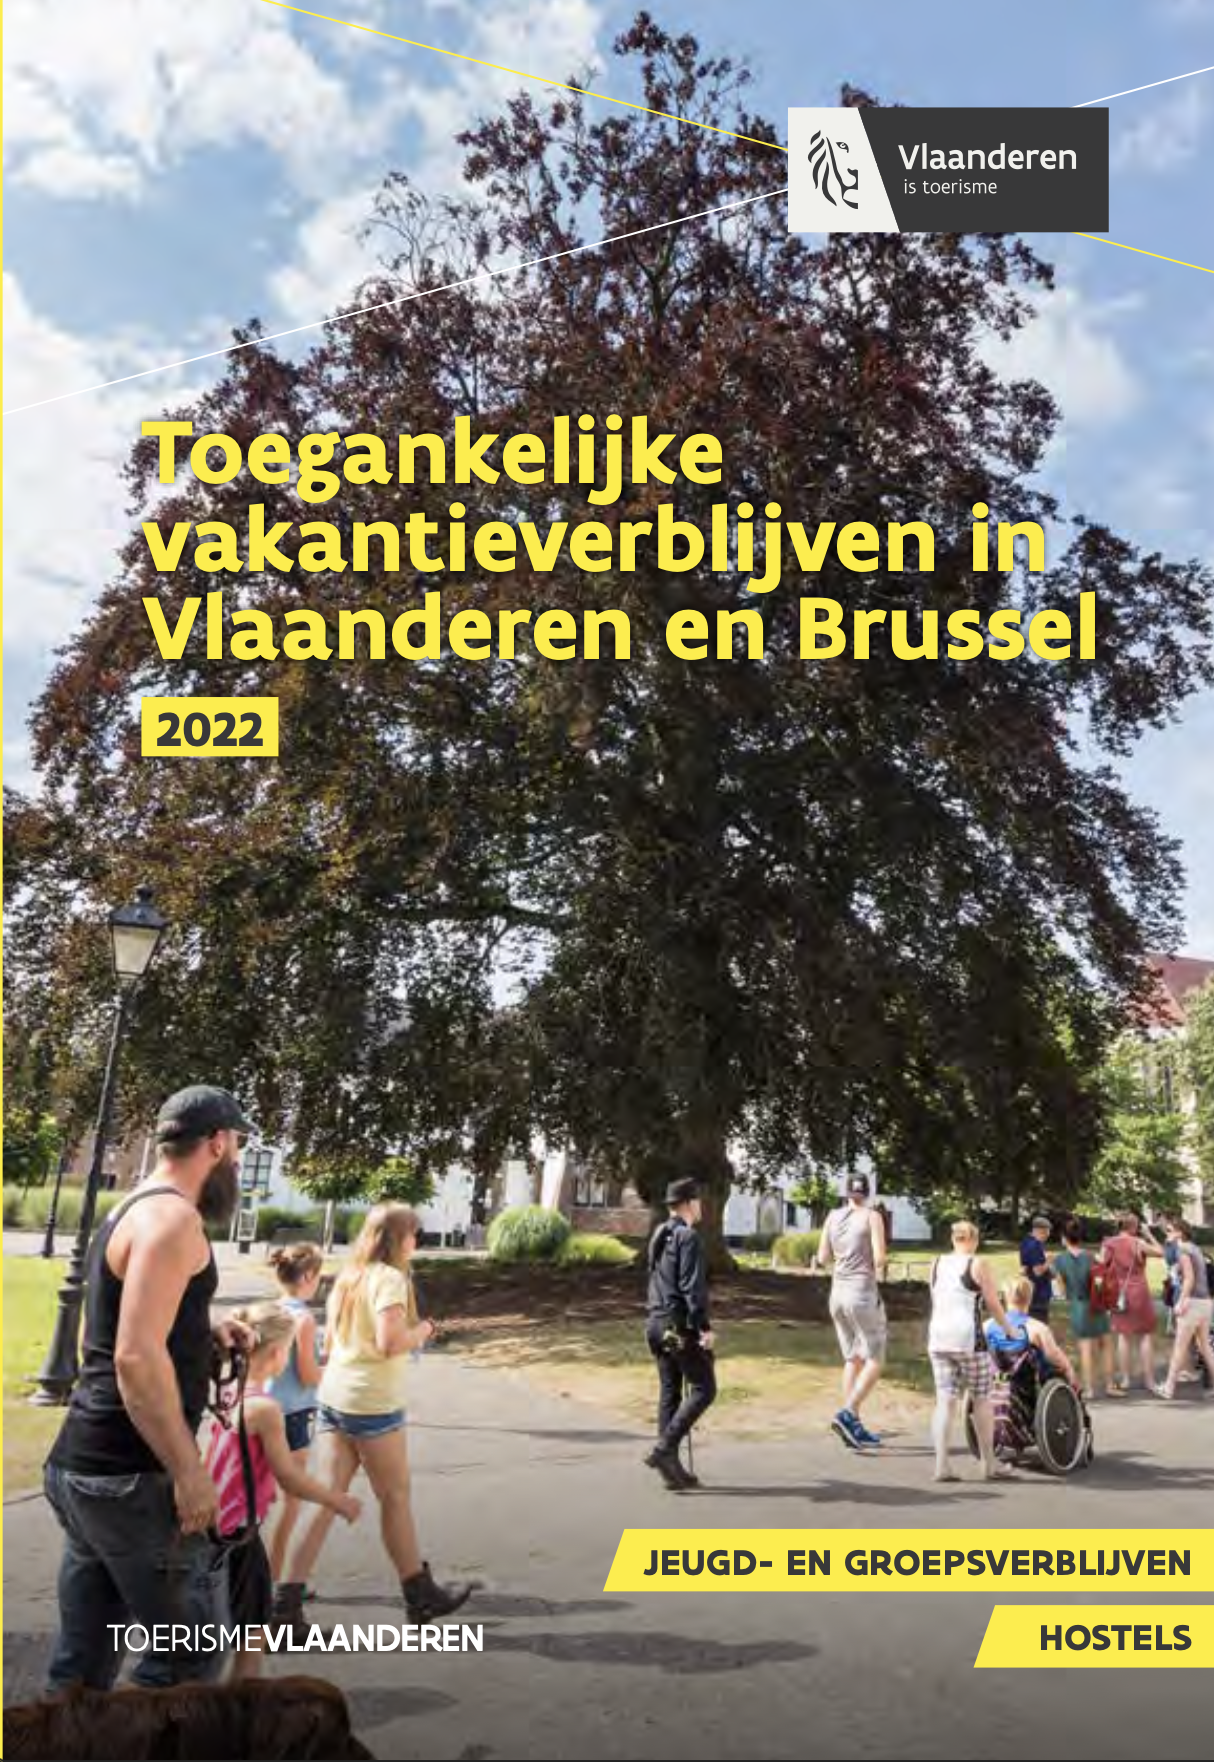 Toegankelijke vakantieverblijven In Vlaanderen en Brussel 2022 (jeugd- en groepsverblijven, hostels)